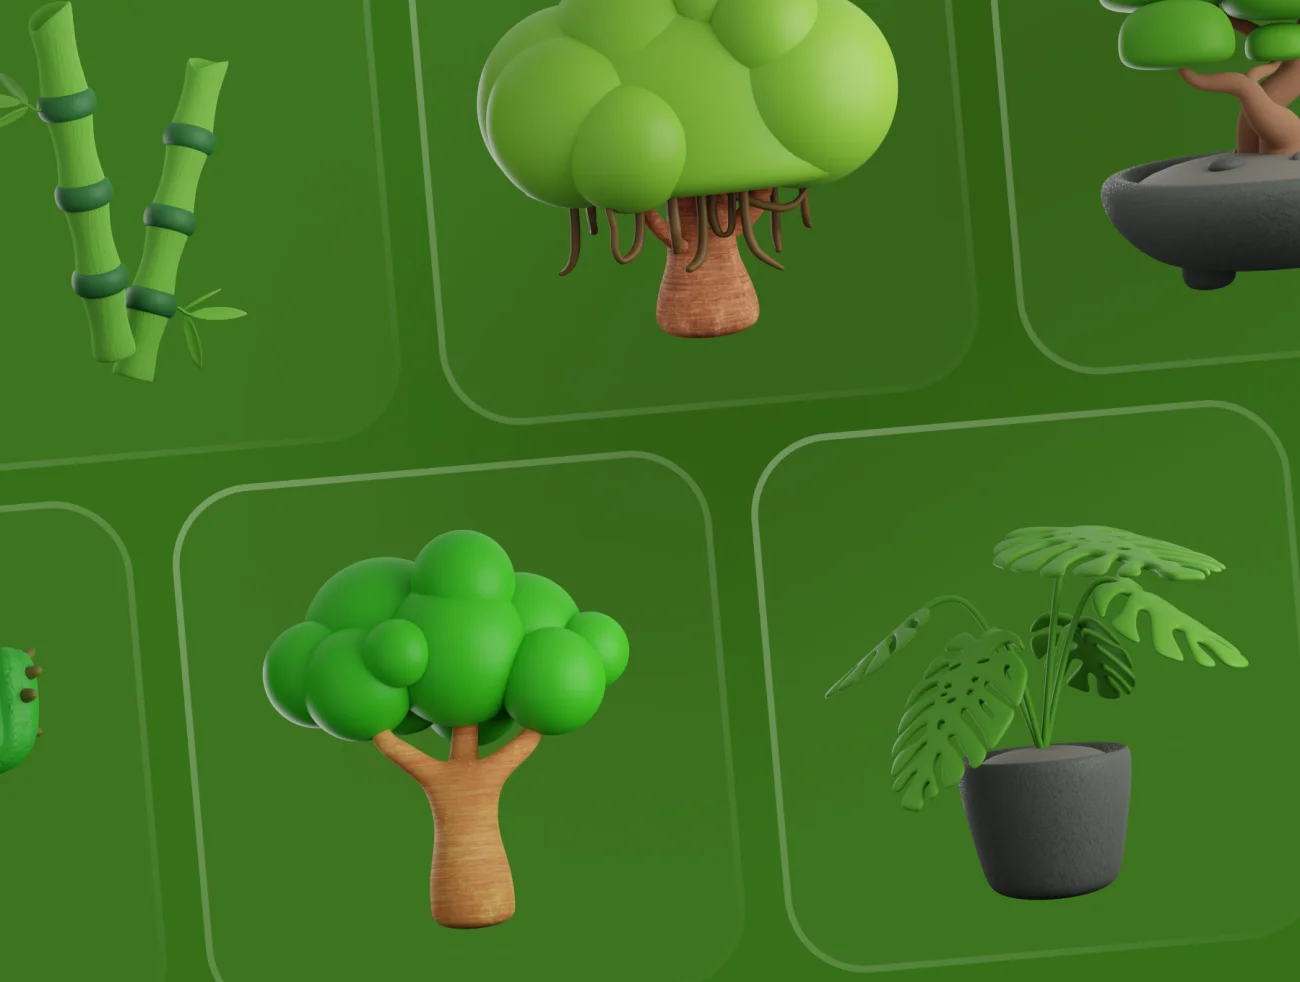 10款树木植物3D图标模型素材 Treeby - Tree & Plant 3D Icon Set .blender .figma .png-3D/图标-到位啦UI